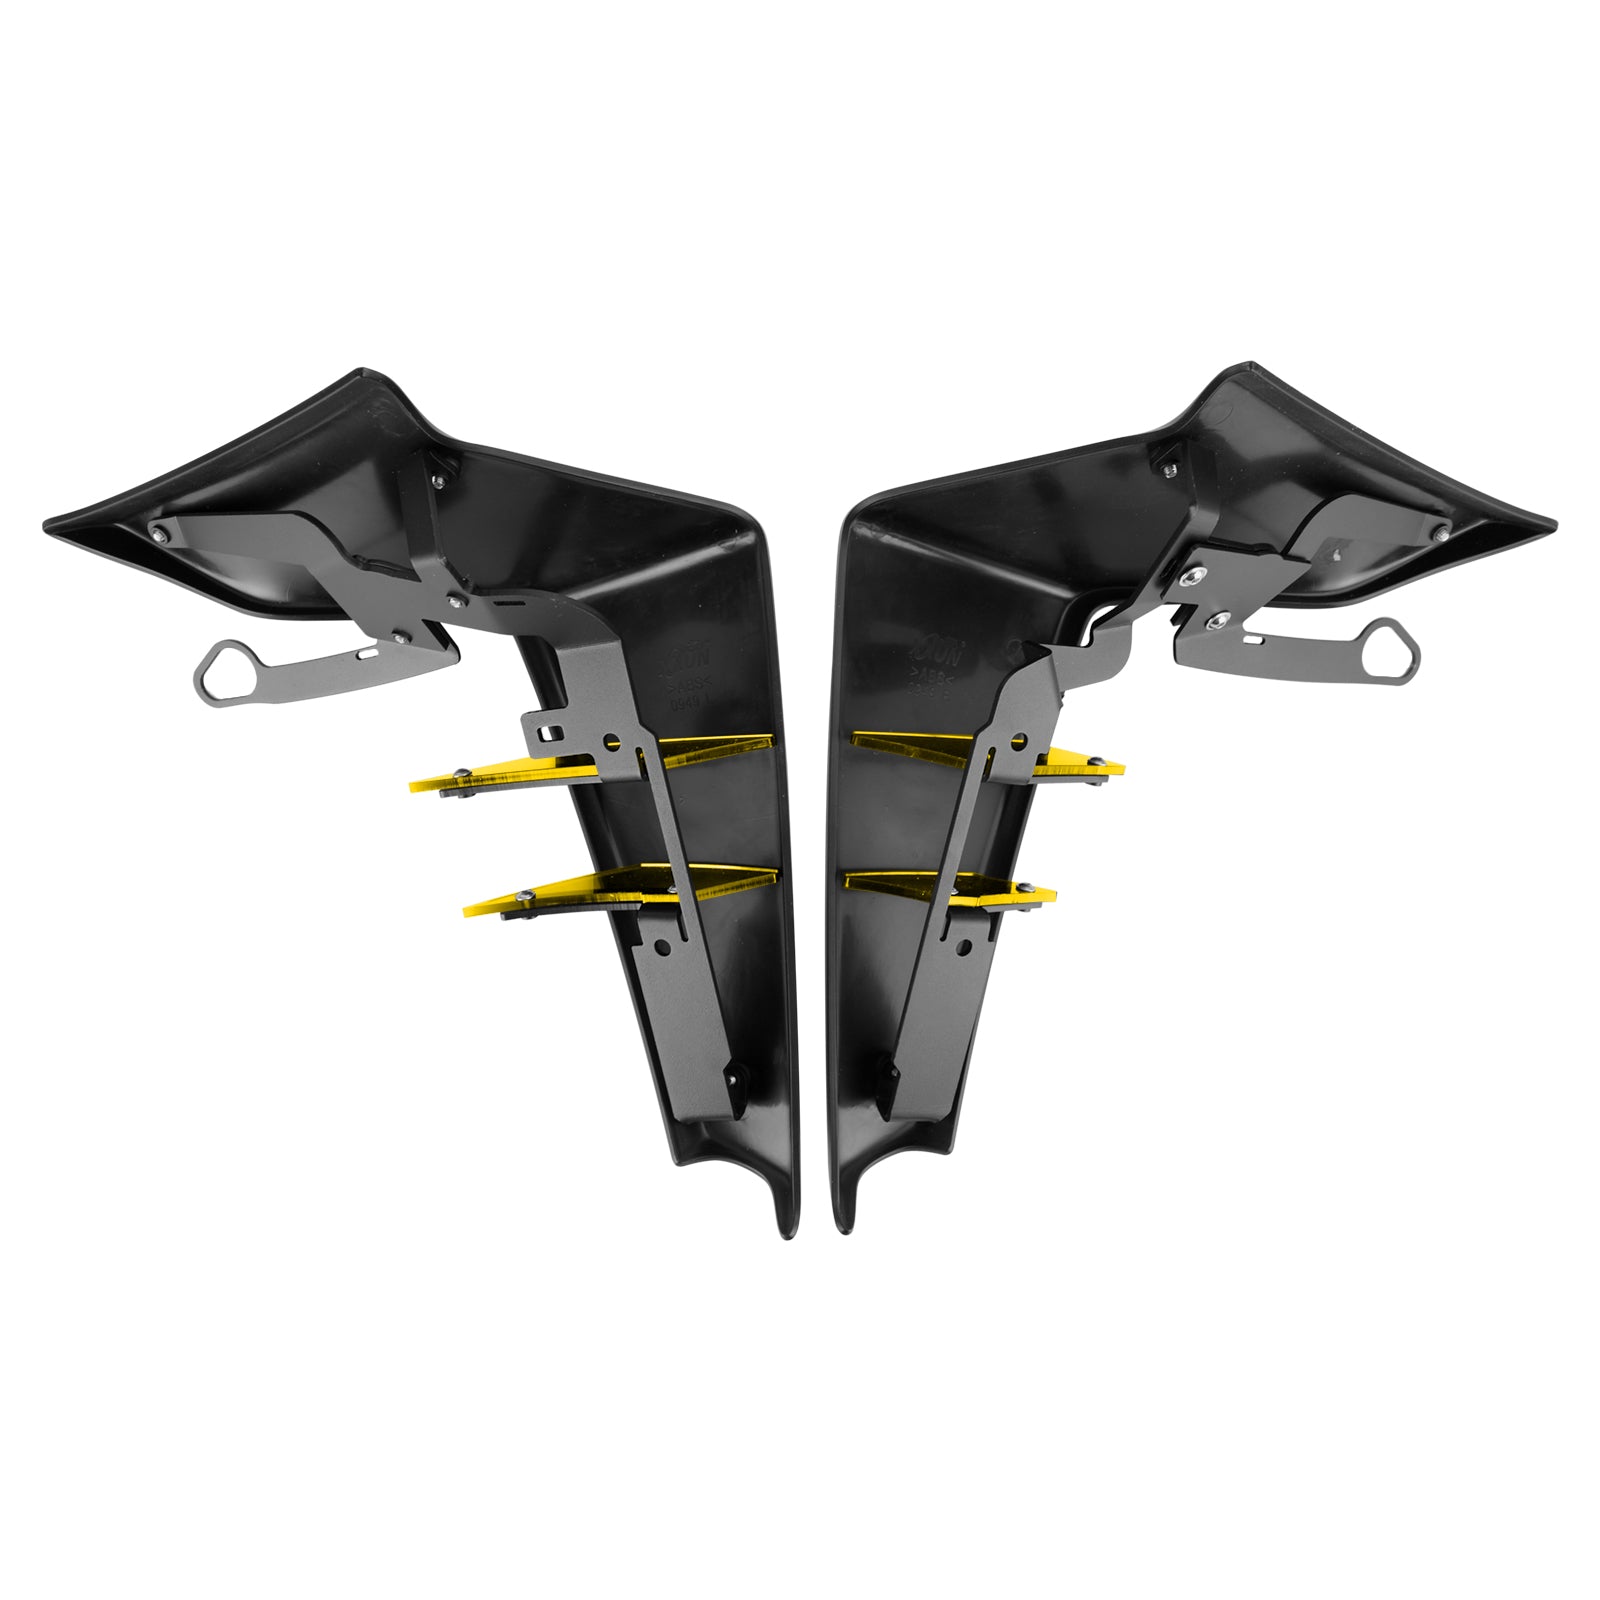 Seitenspoiler, aerodynamischer Flügelabweiser für Yamaha MT-09 SP FZ09 2021–2022